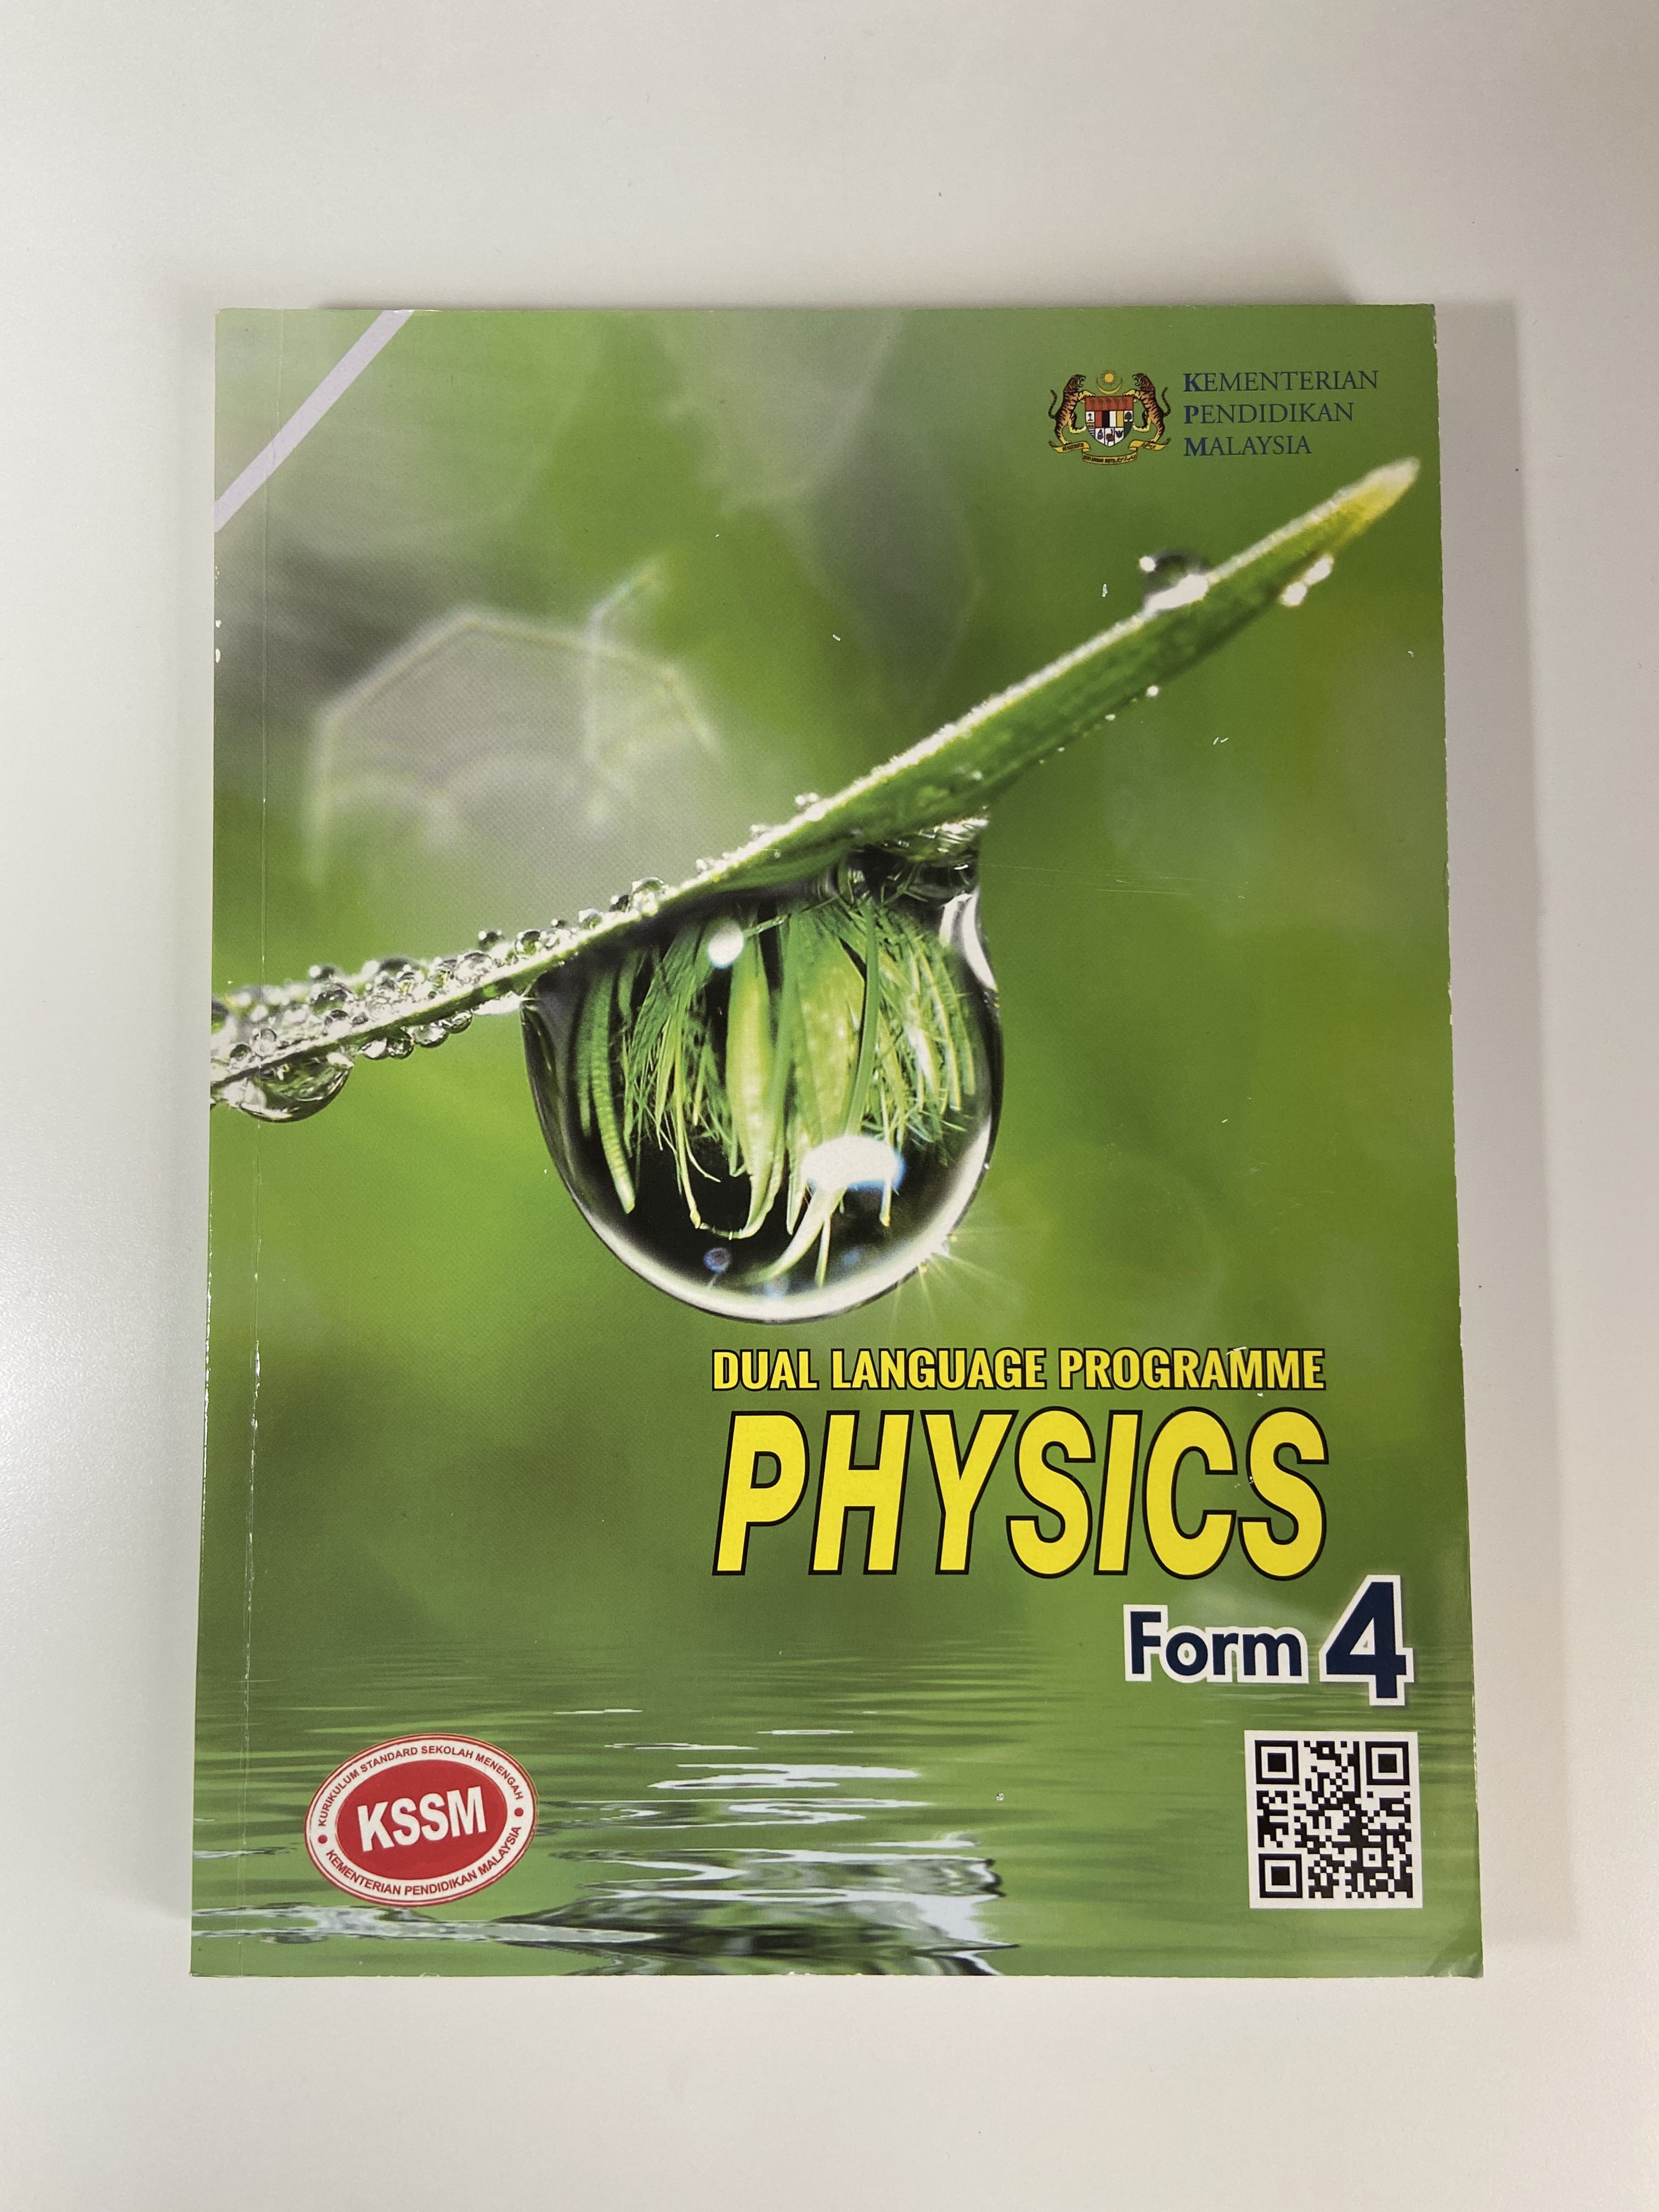 Physics Textbook Kssm Form 4 1649681553 Cf9291e7 